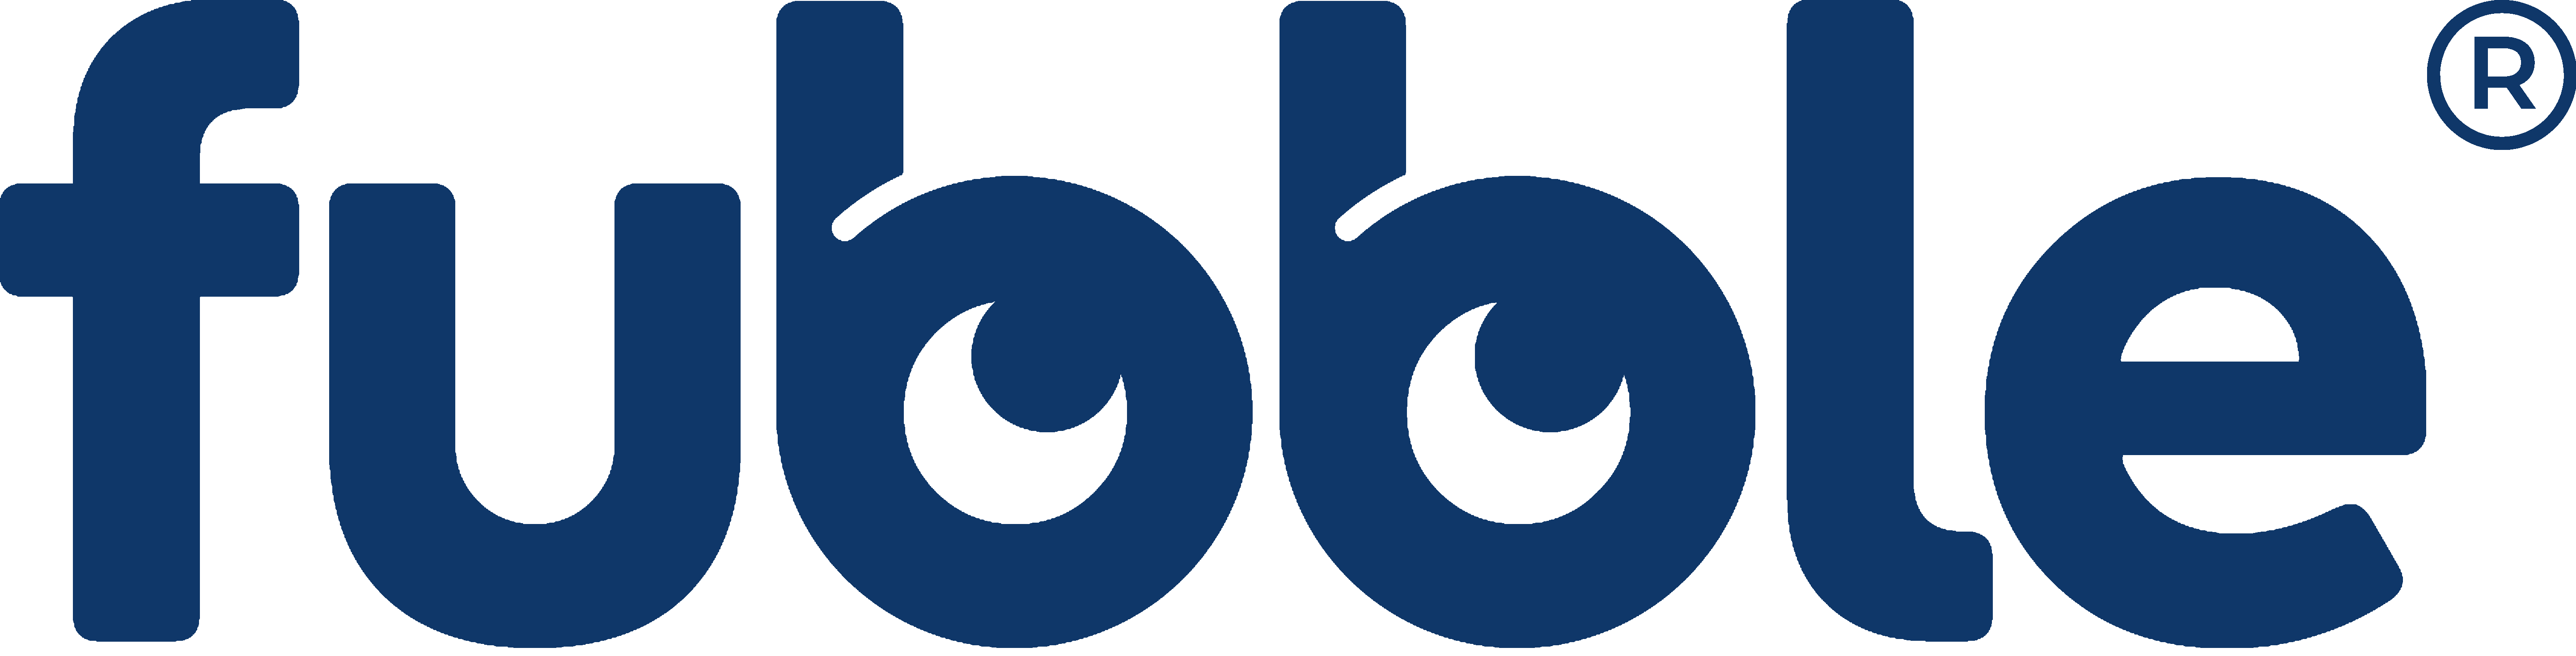 Logo neu groß mit R – blau